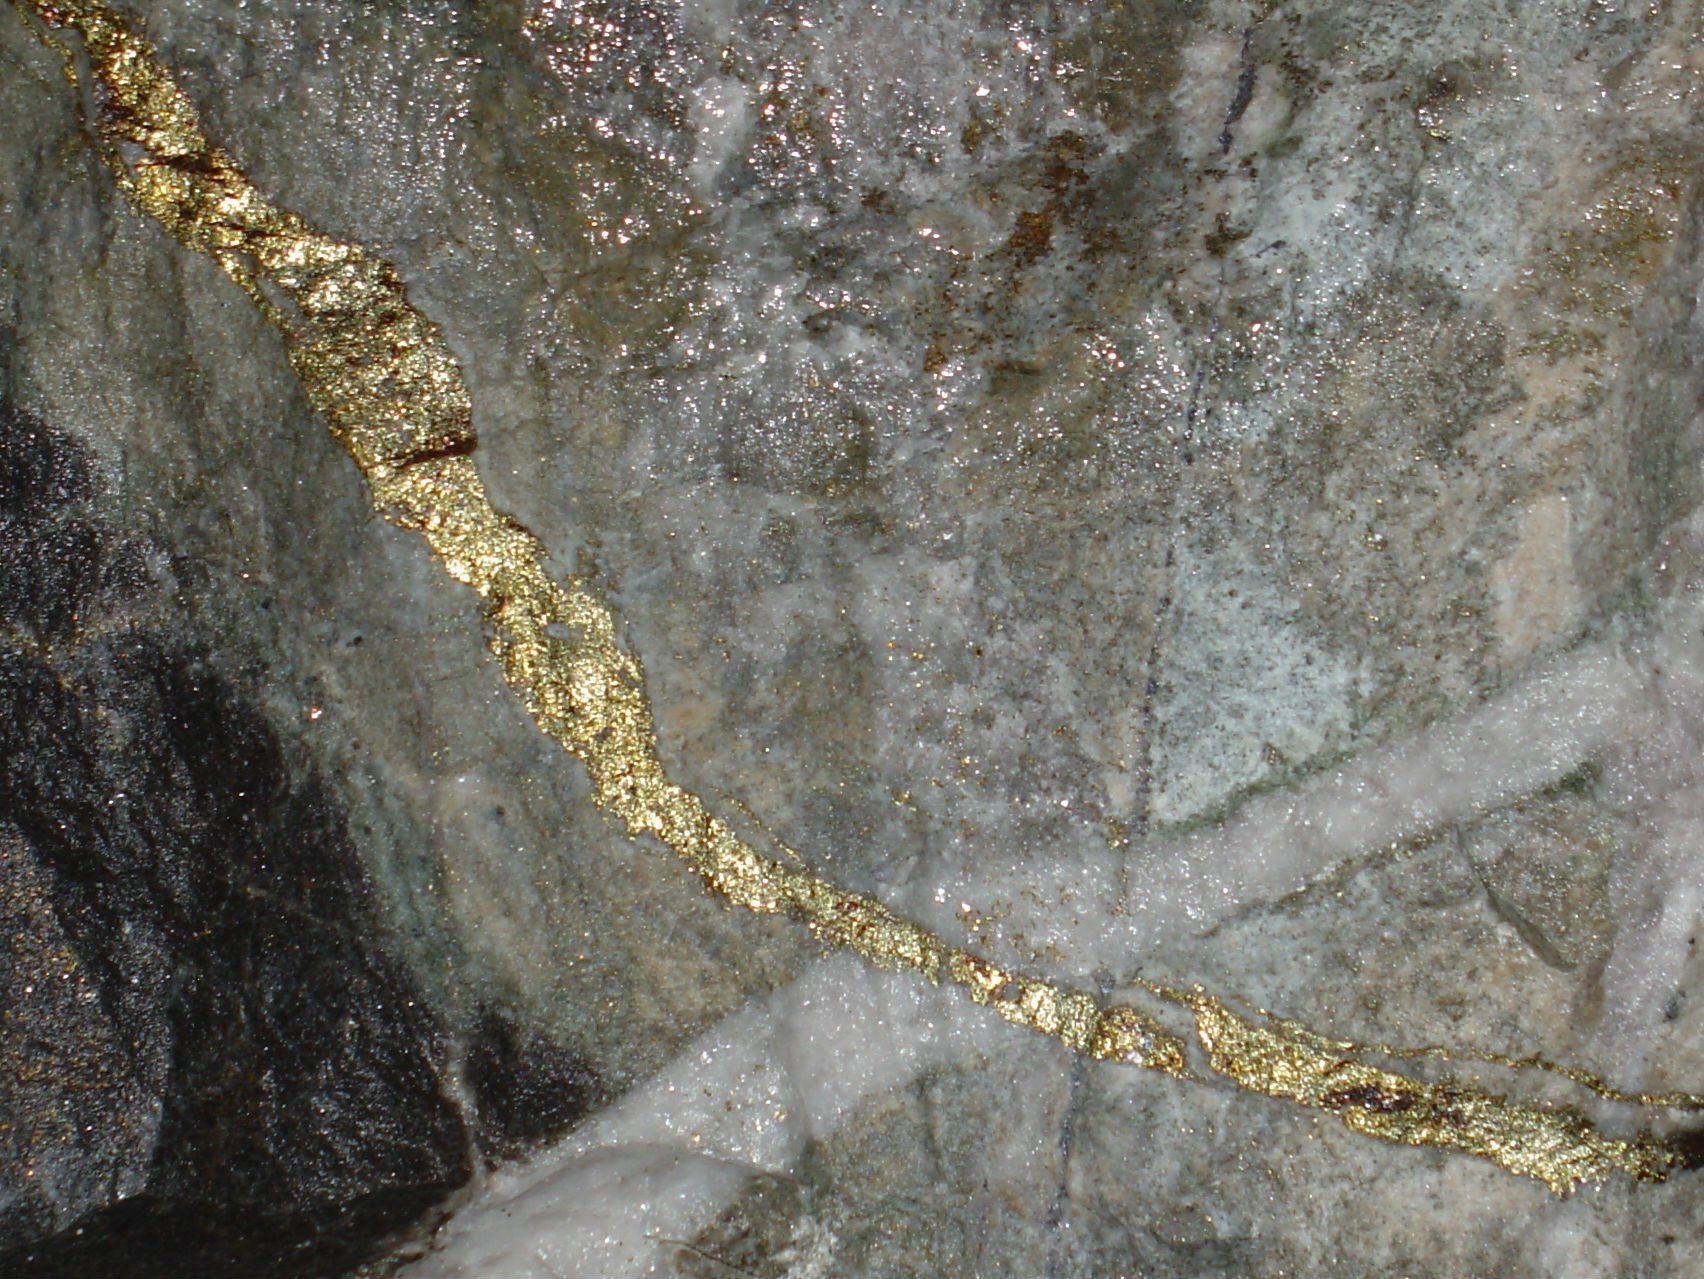 Ключ золотая жила. Кабардино-Балкария месторождение золота. Золото кварц-сульфидные месторождения. Золотоносная руда Урала. Золотоносная руда Кавказа.